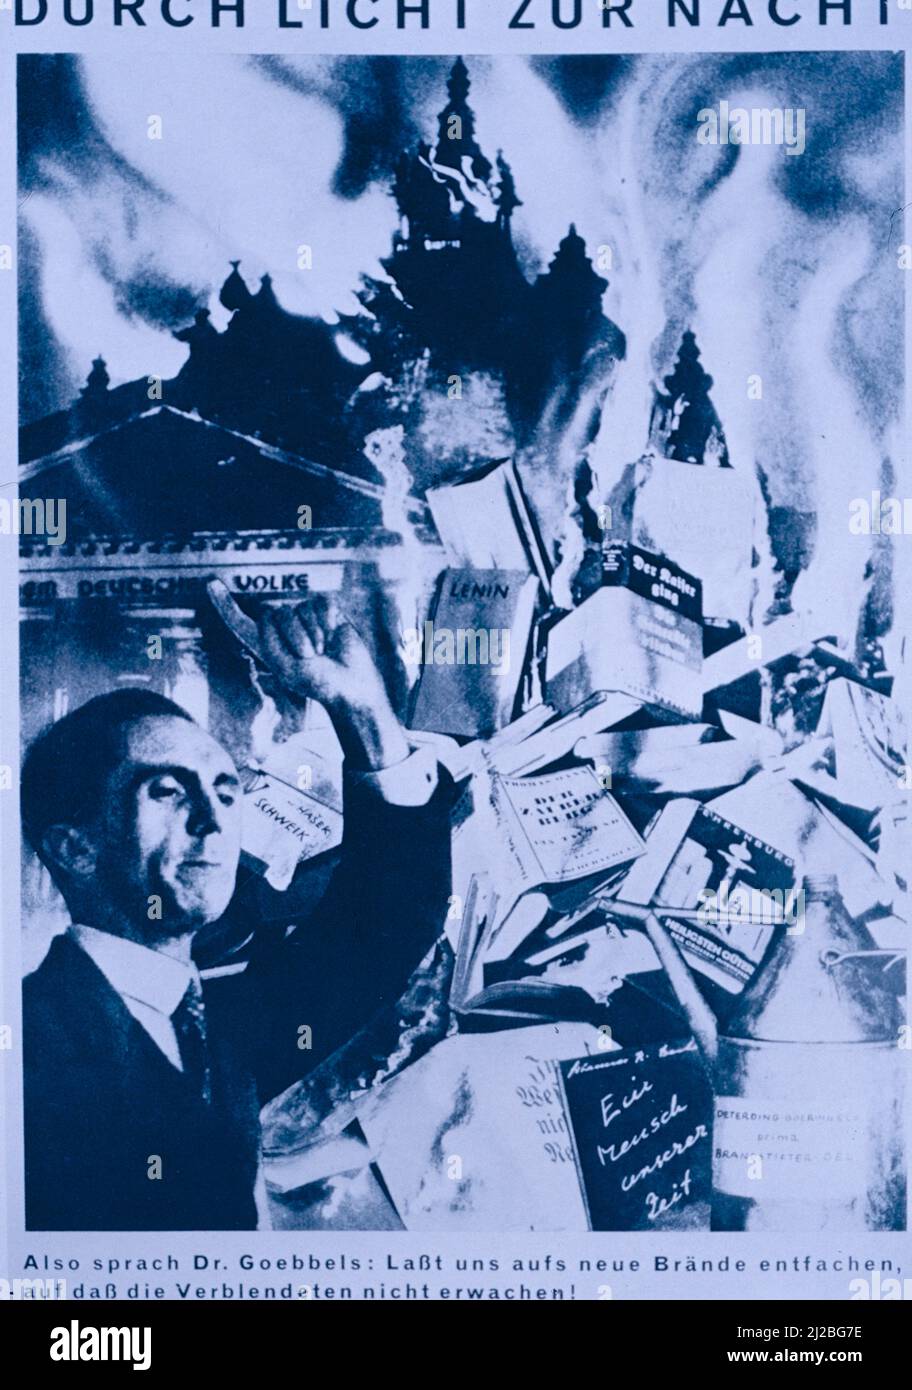 Durch Licht Zur Nacht. Anche Sprach Dr. Goebbels, opera dell'artista tedesco John Heartfield, 1933 Foto Stock